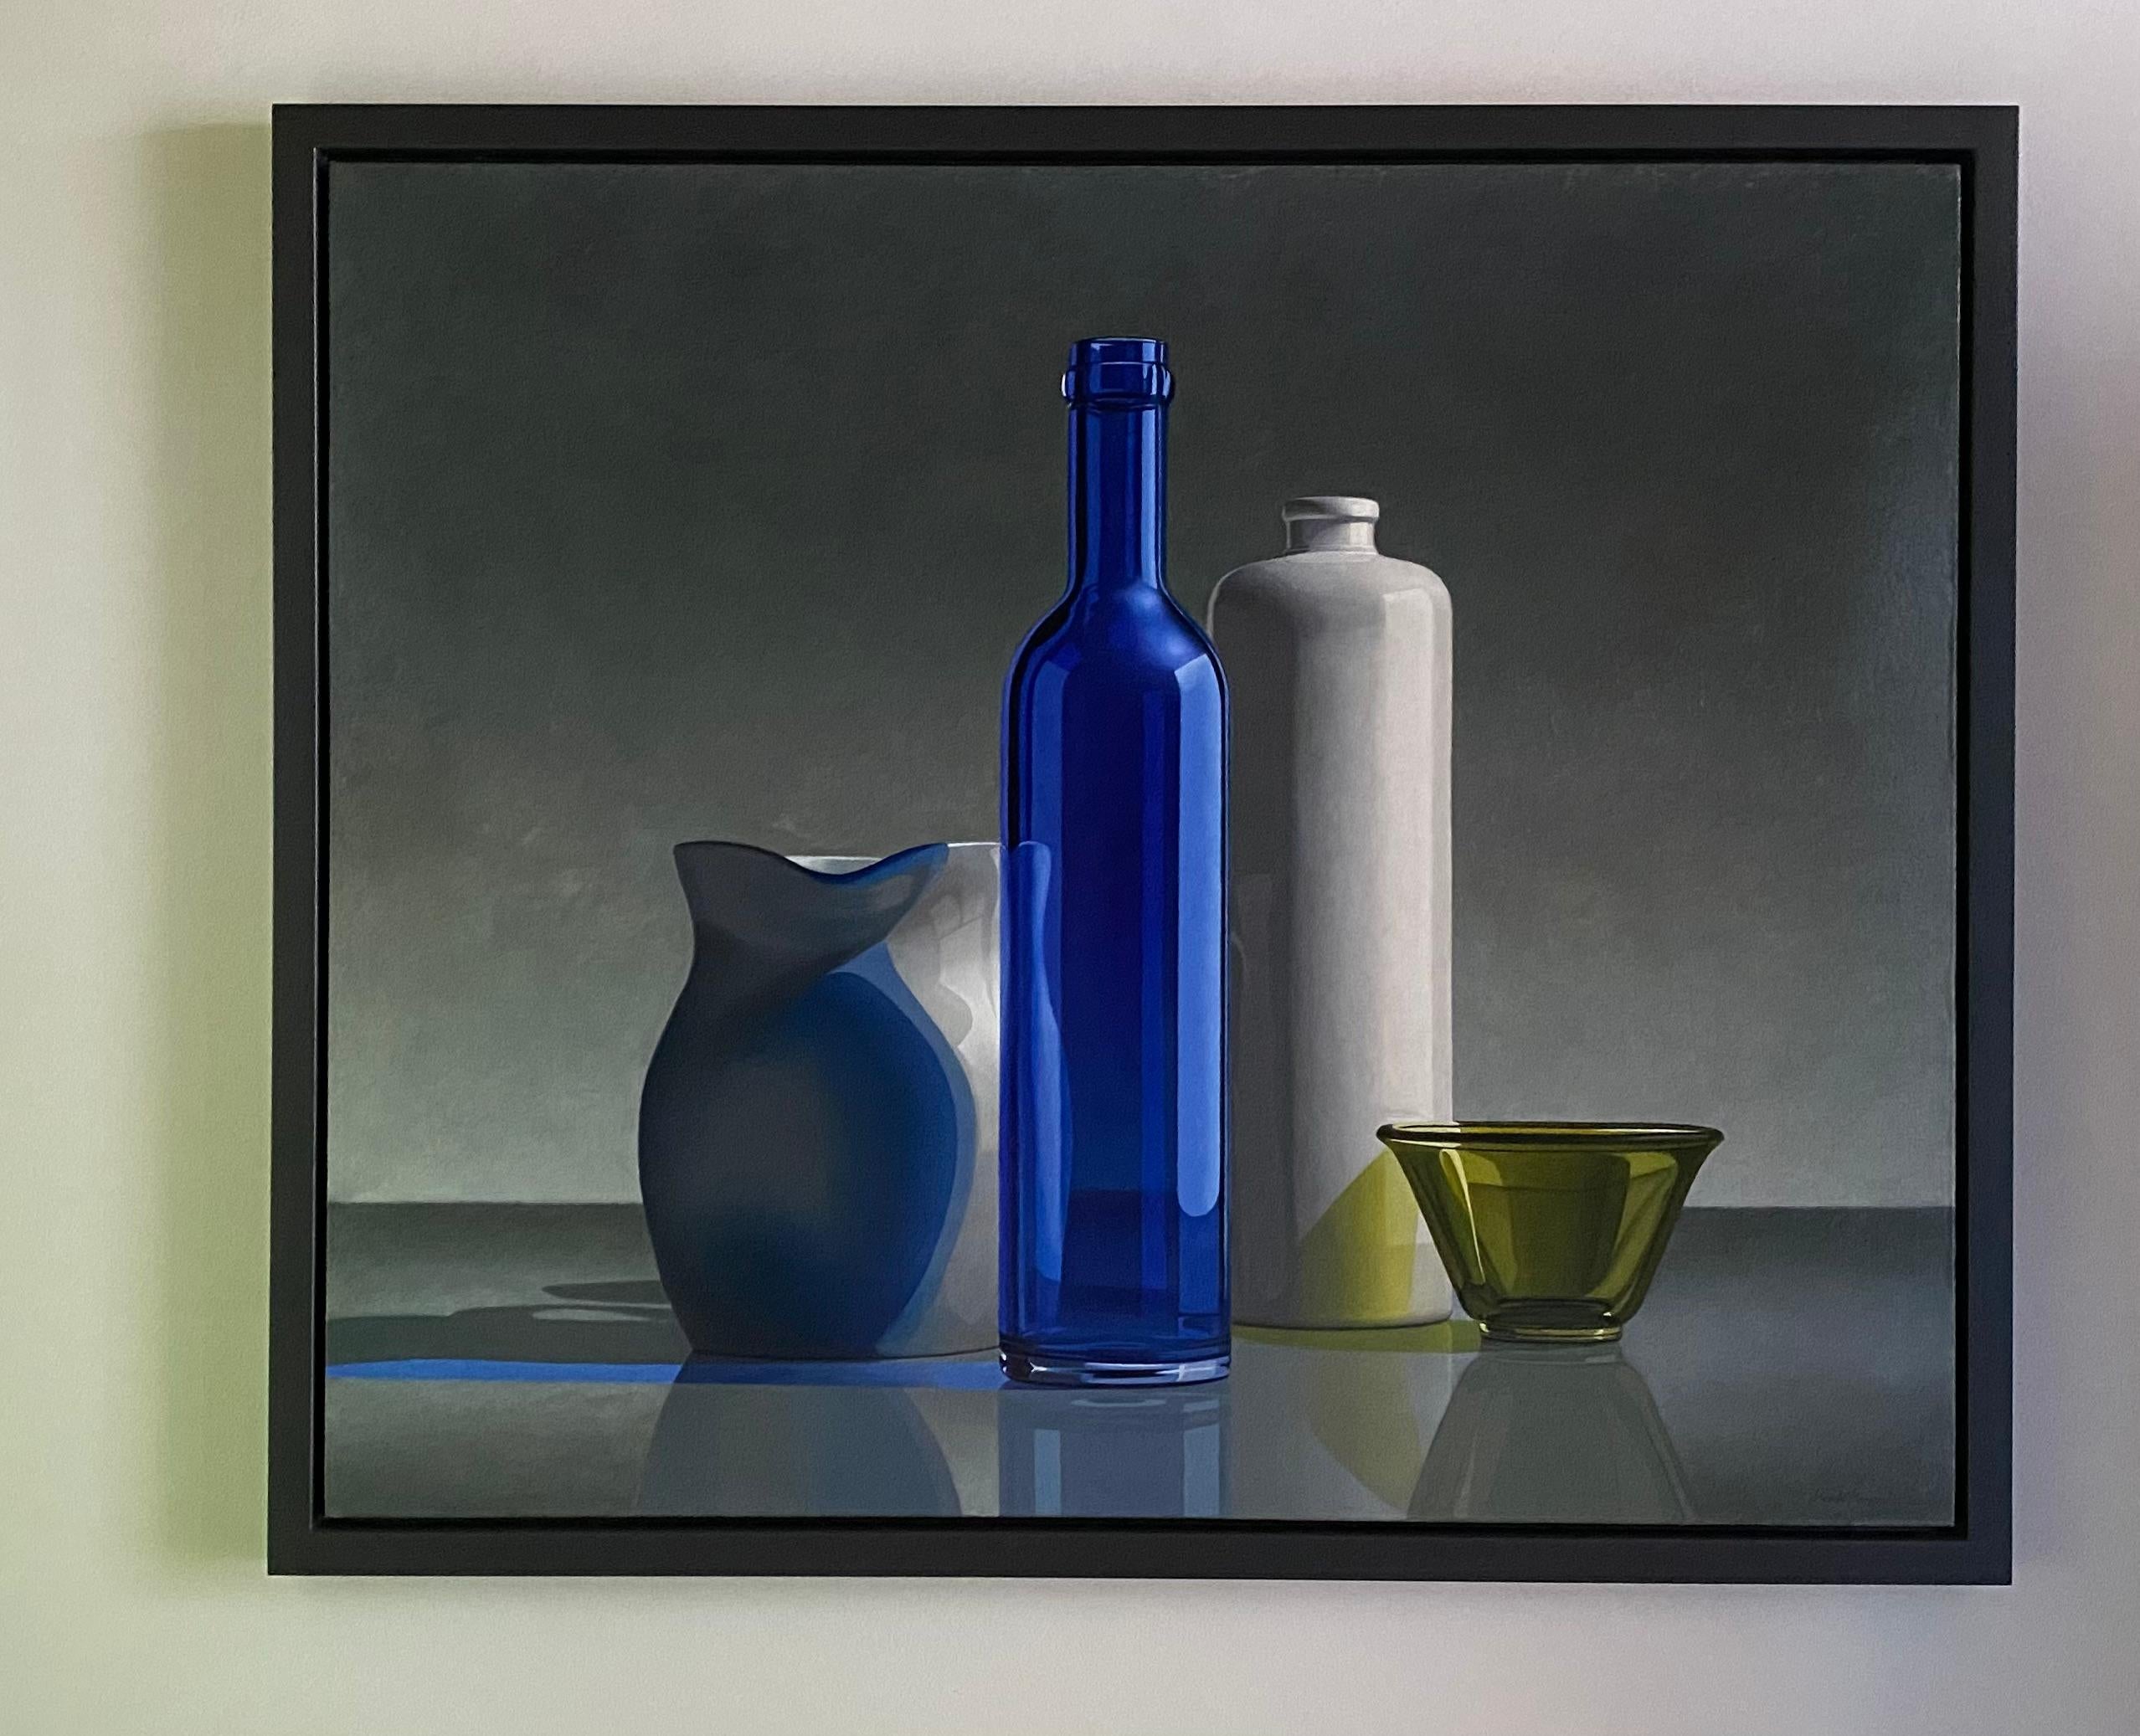 Composition en bleu et vert - Peinture de nature morte réaliste néerlandaise du 21e siècle - Contemporain Painting par Henk Boon